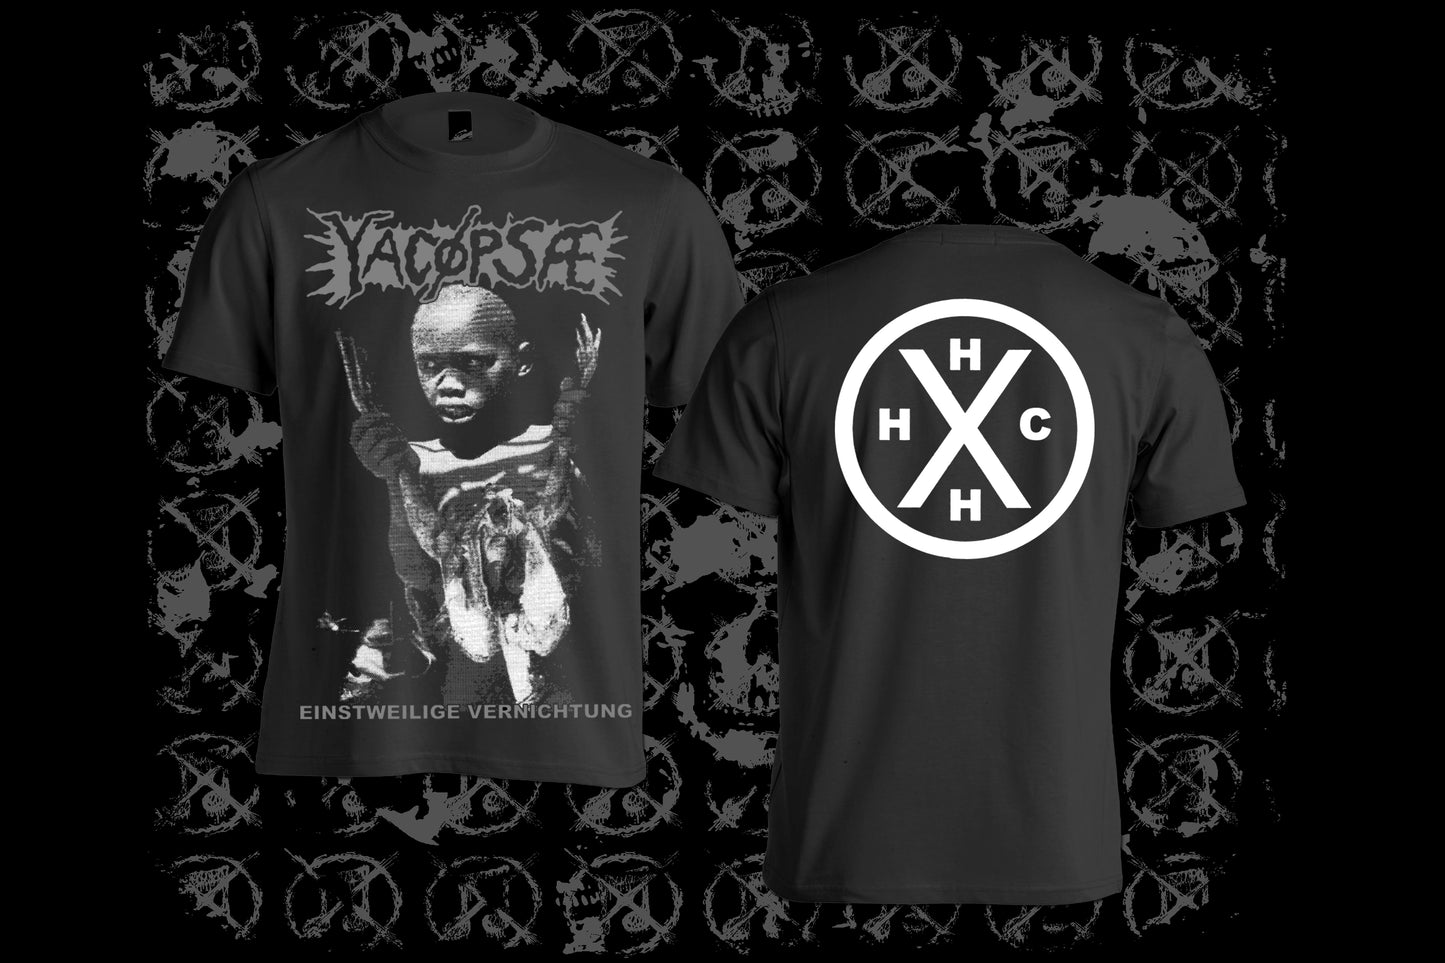 YACOPSAE - Einstweilige Vernichtung T-shirt